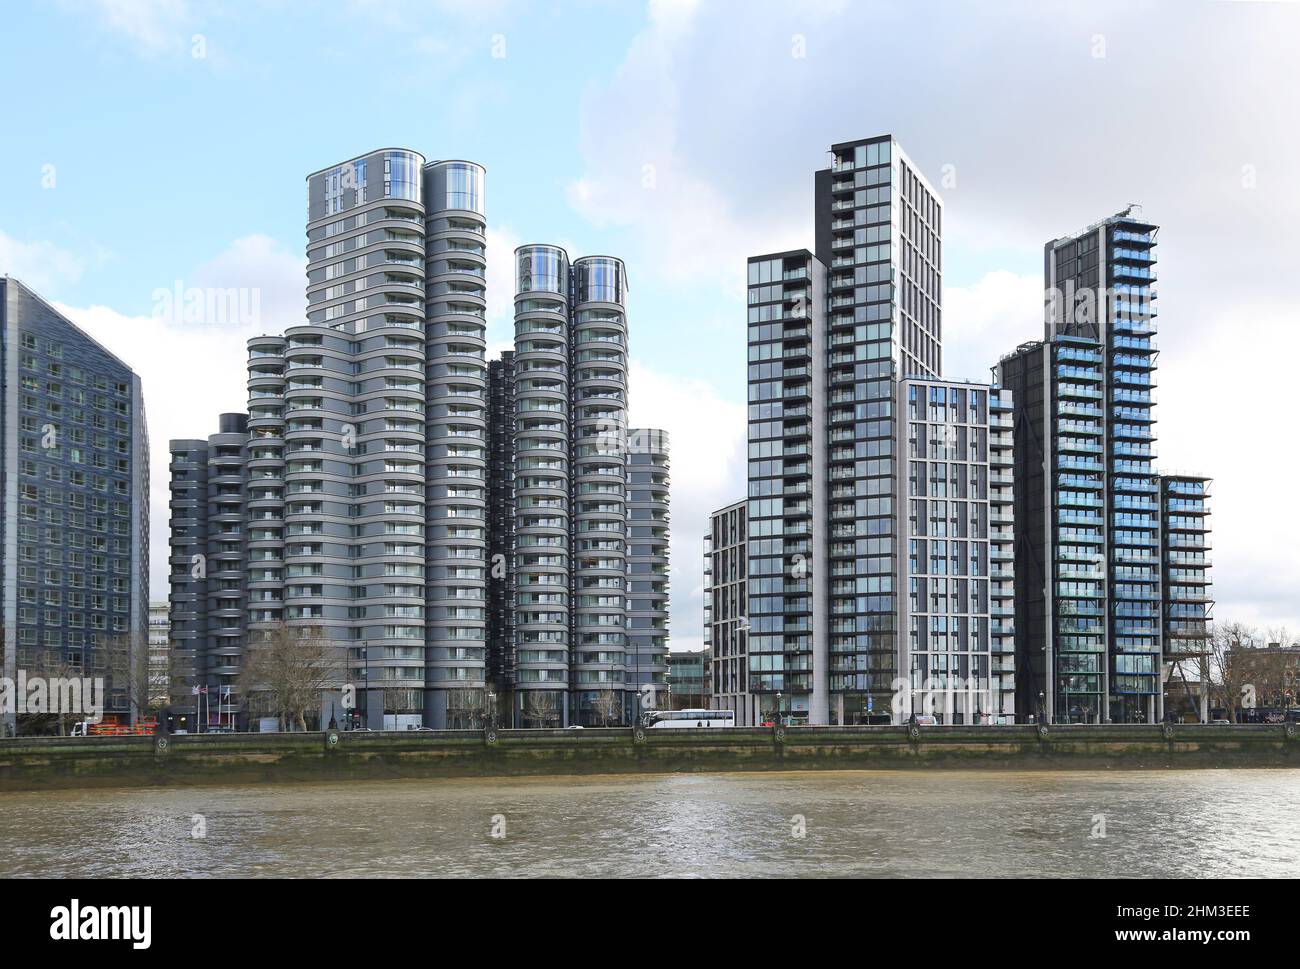 Nuevos bloques de apartamentos en el Albert Embankment de Londres. Incluye el Corniche de Foster + Partners (izquierda) y Merano Residences de Richard Rogers (derecha). Foto de stock